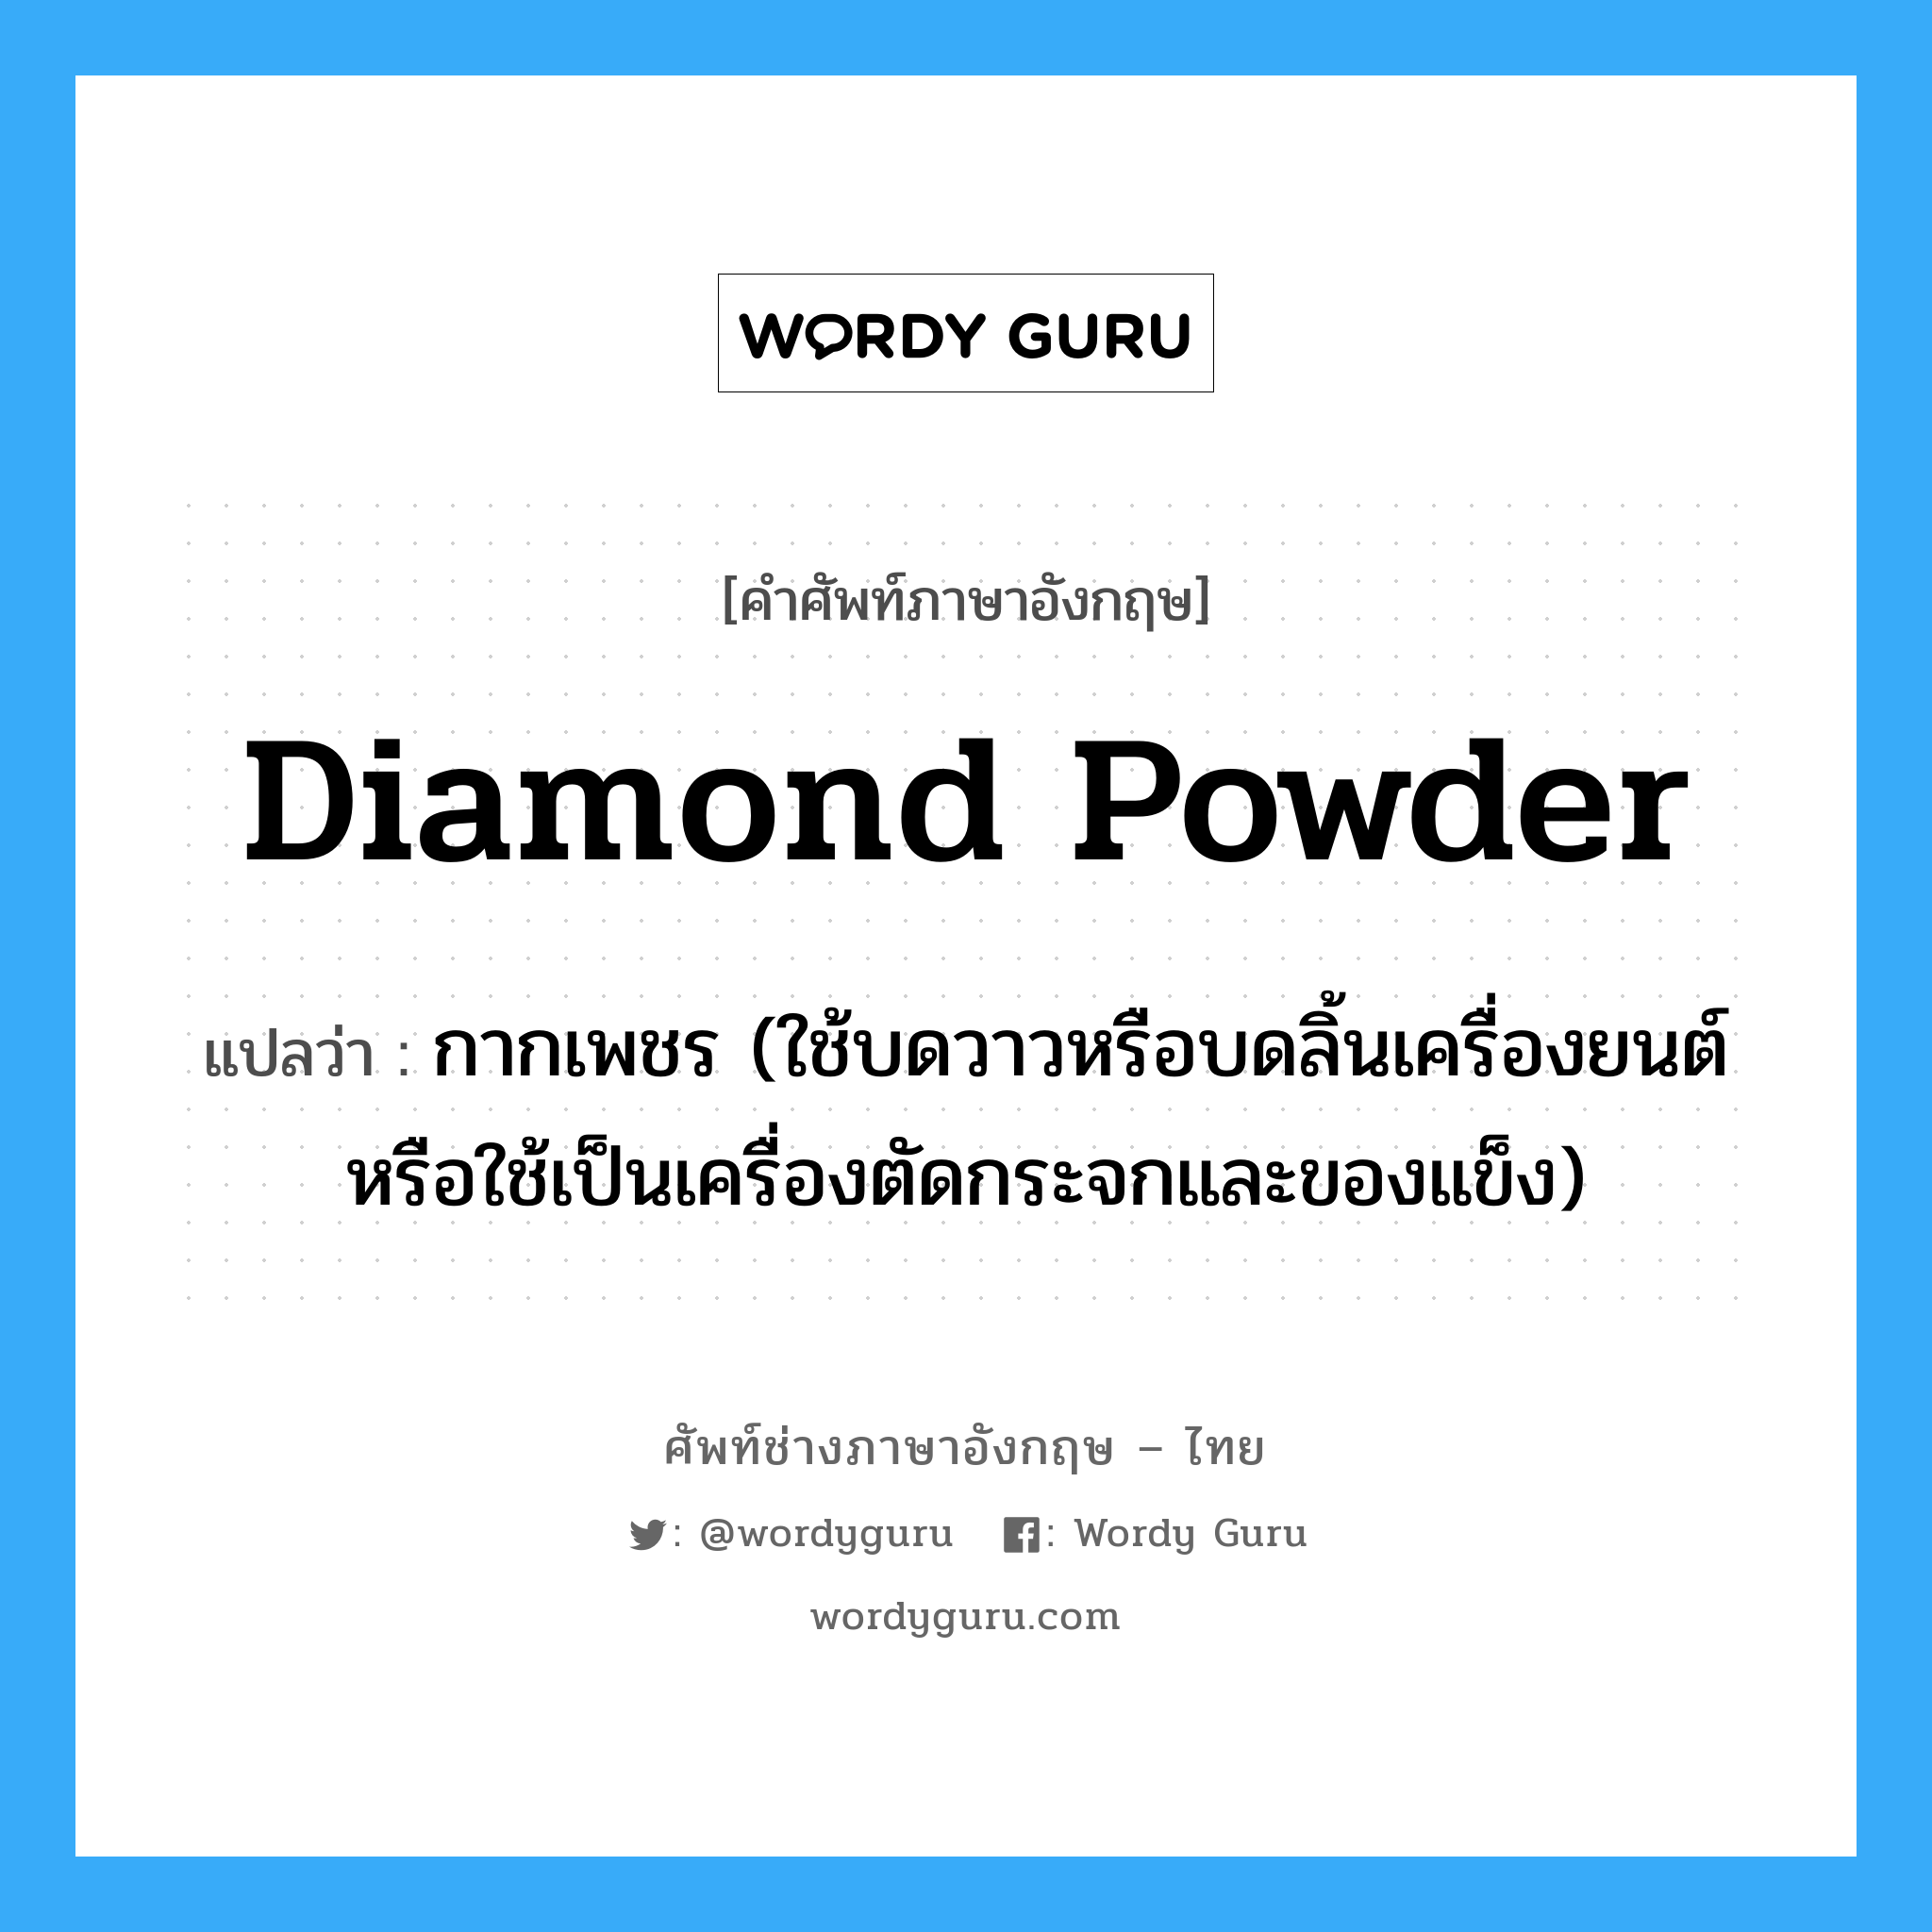 diamond powder แปลว่า?, คำศัพท์ช่างภาษาอังกฤษ - ไทย diamond powder คำศัพท์ภาษาอังกฤษ diamond powder แปลว่า กากเพชร (ใช้บดวาวหรือบดลิ้นเครื่องยนต์ หรือใช้เป็นเครื่องตัดกระจกและของแข็ง)